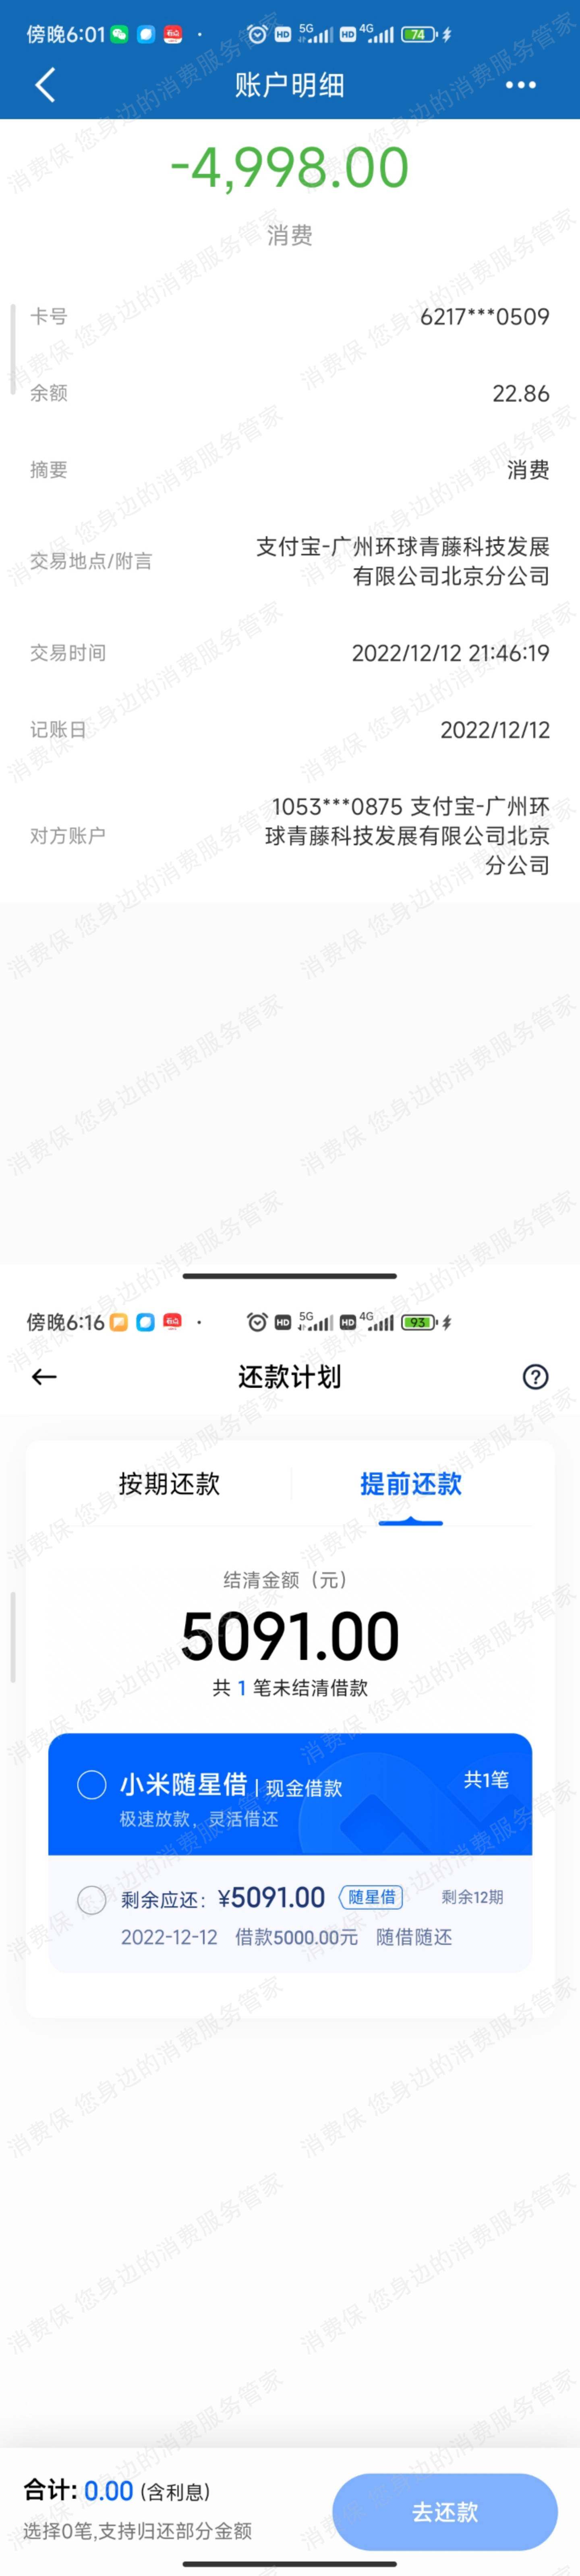 广州千知网络科技